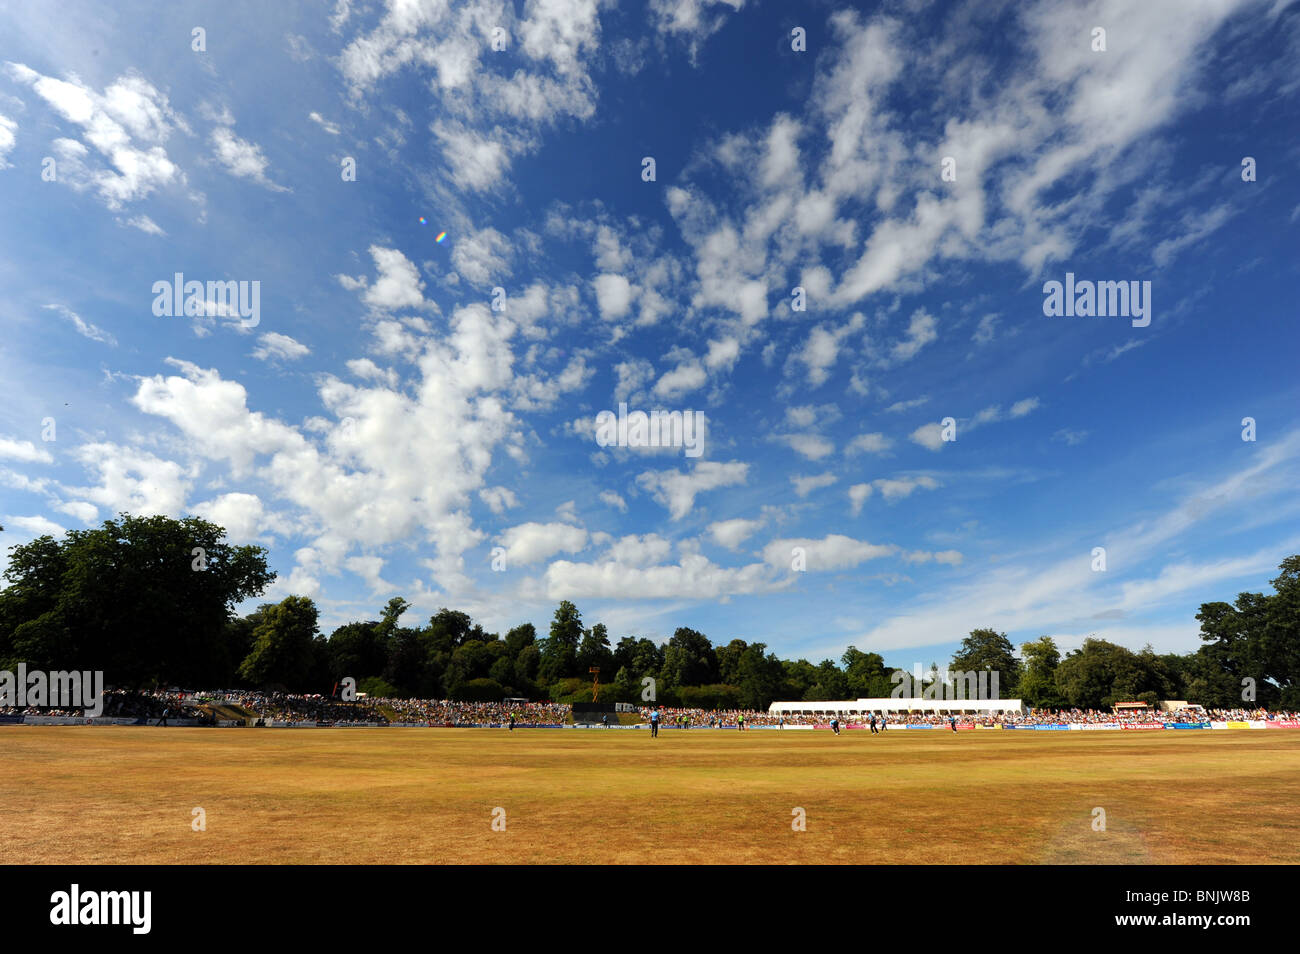 Sec desséchée sur champ extérieur au terrain de cricket Arundel Castle dans le West Sussex UK Banque D'Images